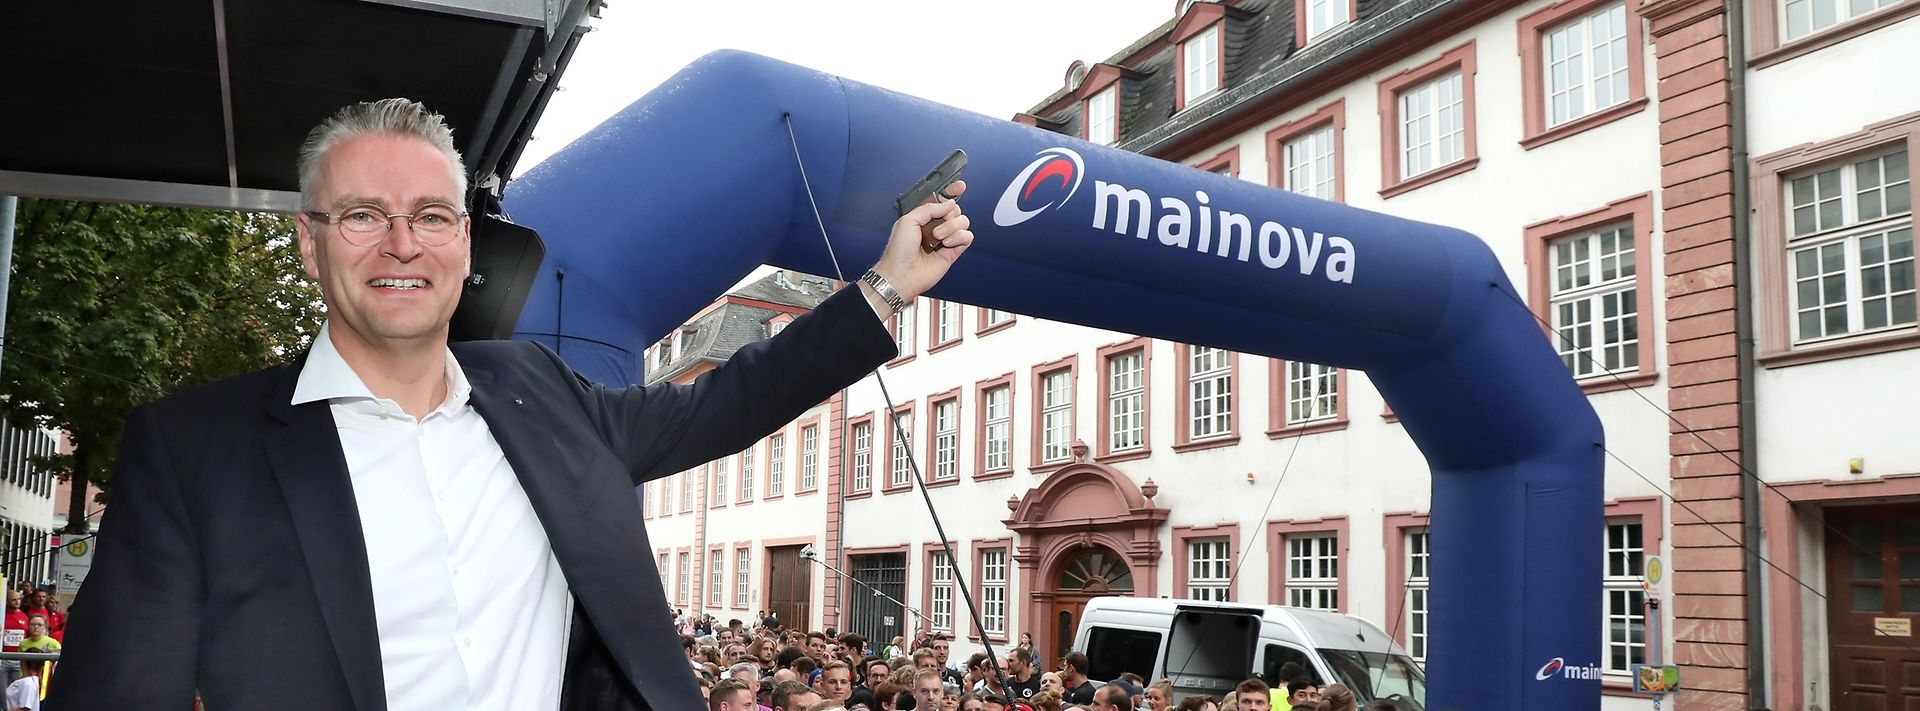 Mainova - Firmenlauf Mainz